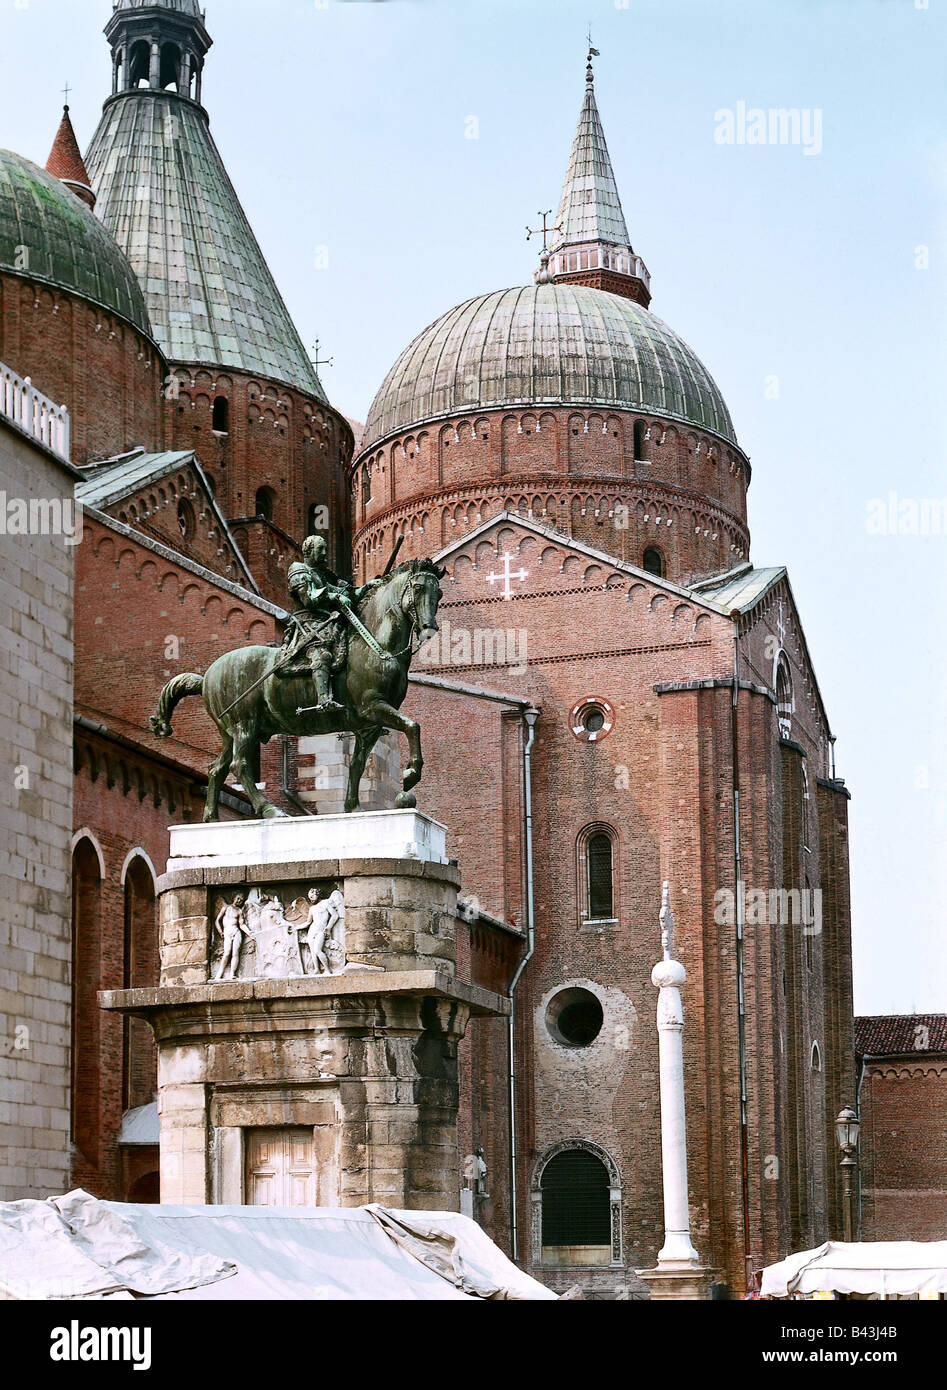 Beaux-arts, Donatello (Donato di Niccolo di Betto Bardi, 1386 - 1466), statue équestre condottiere Gattamelata (Erasmo da Nani), bronze, 1447 - 1453, Dome, Padoue, Italie, l'artiste n'a pas d'auteur pour être effacé Banque D'Images